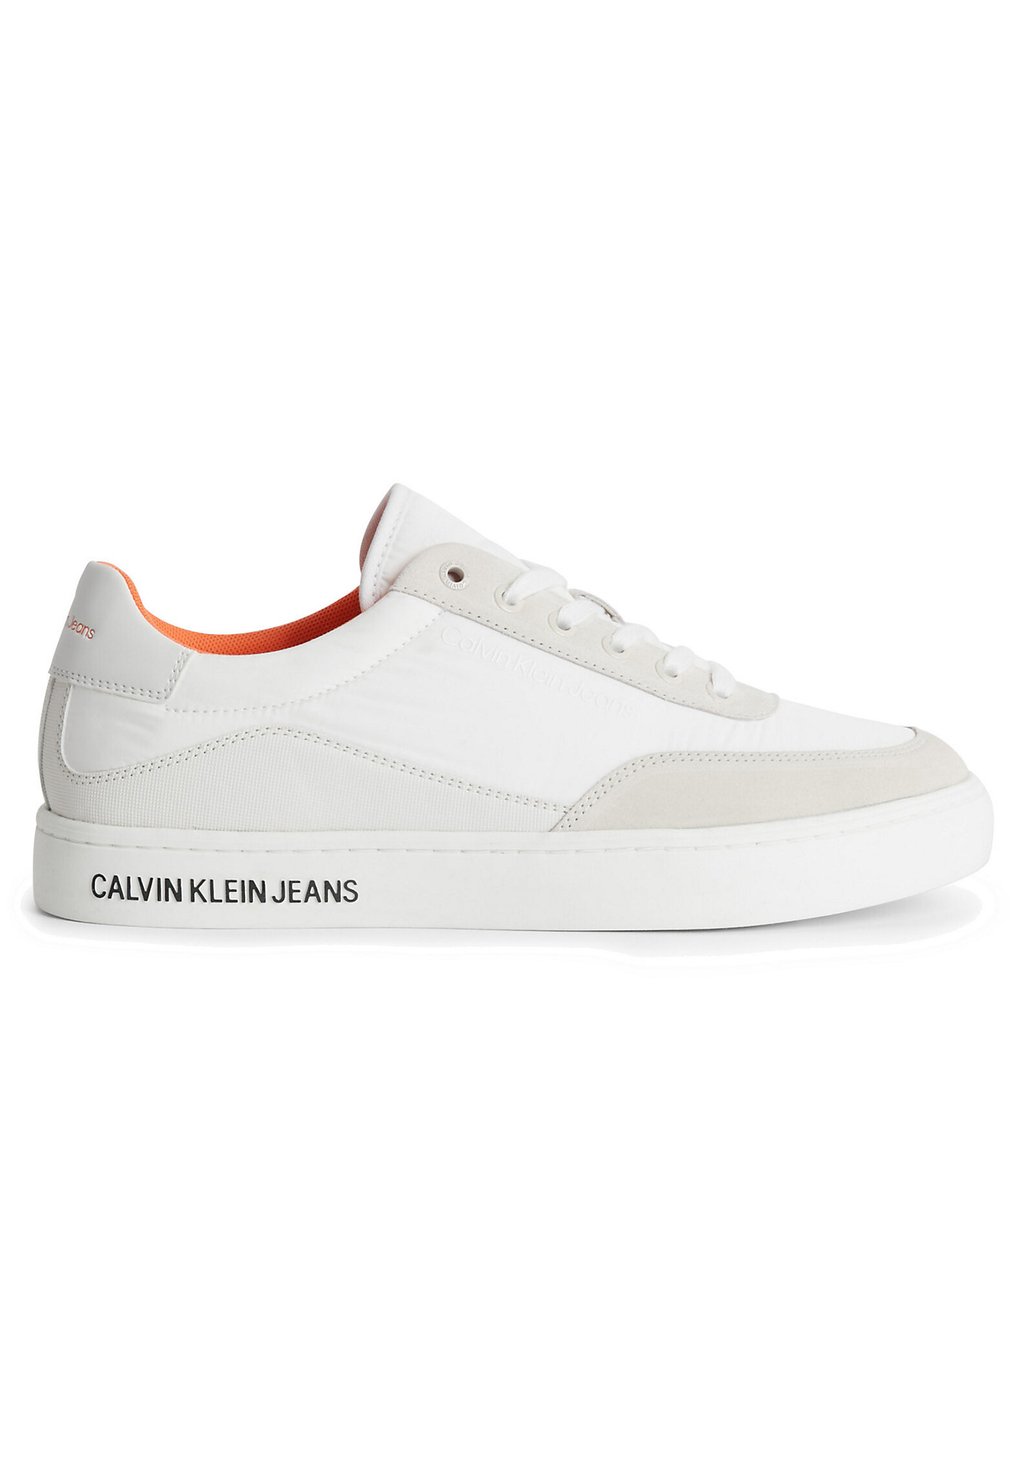 Кроссовки Calvin Klein Jeans кроссовки calvin klein jeans bold lace цвет apricot ice creamy white